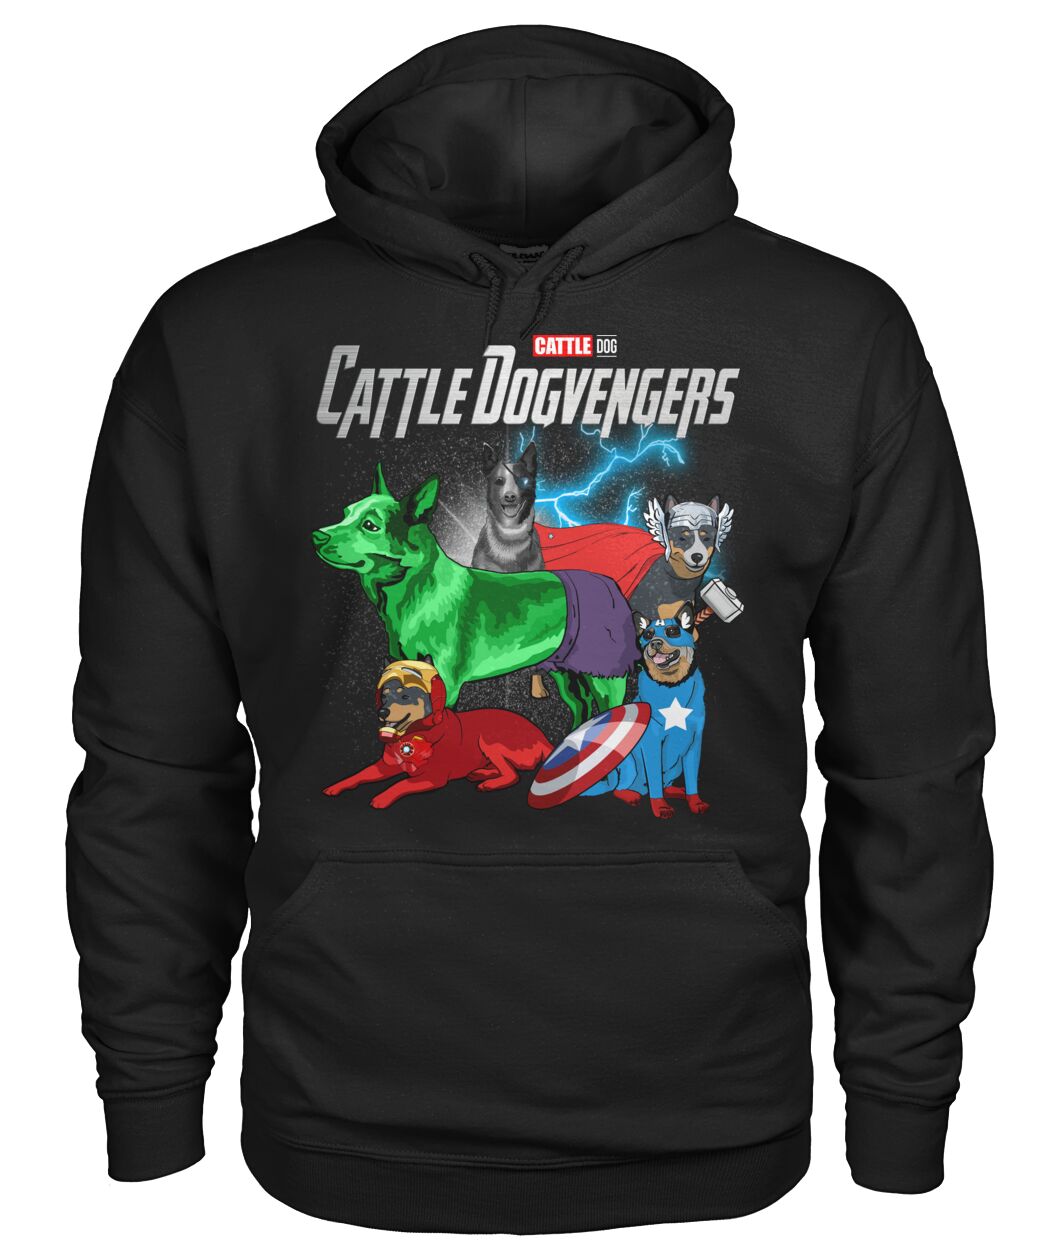 Cattle Dogvengers 3D Hoodie, Shirt 9